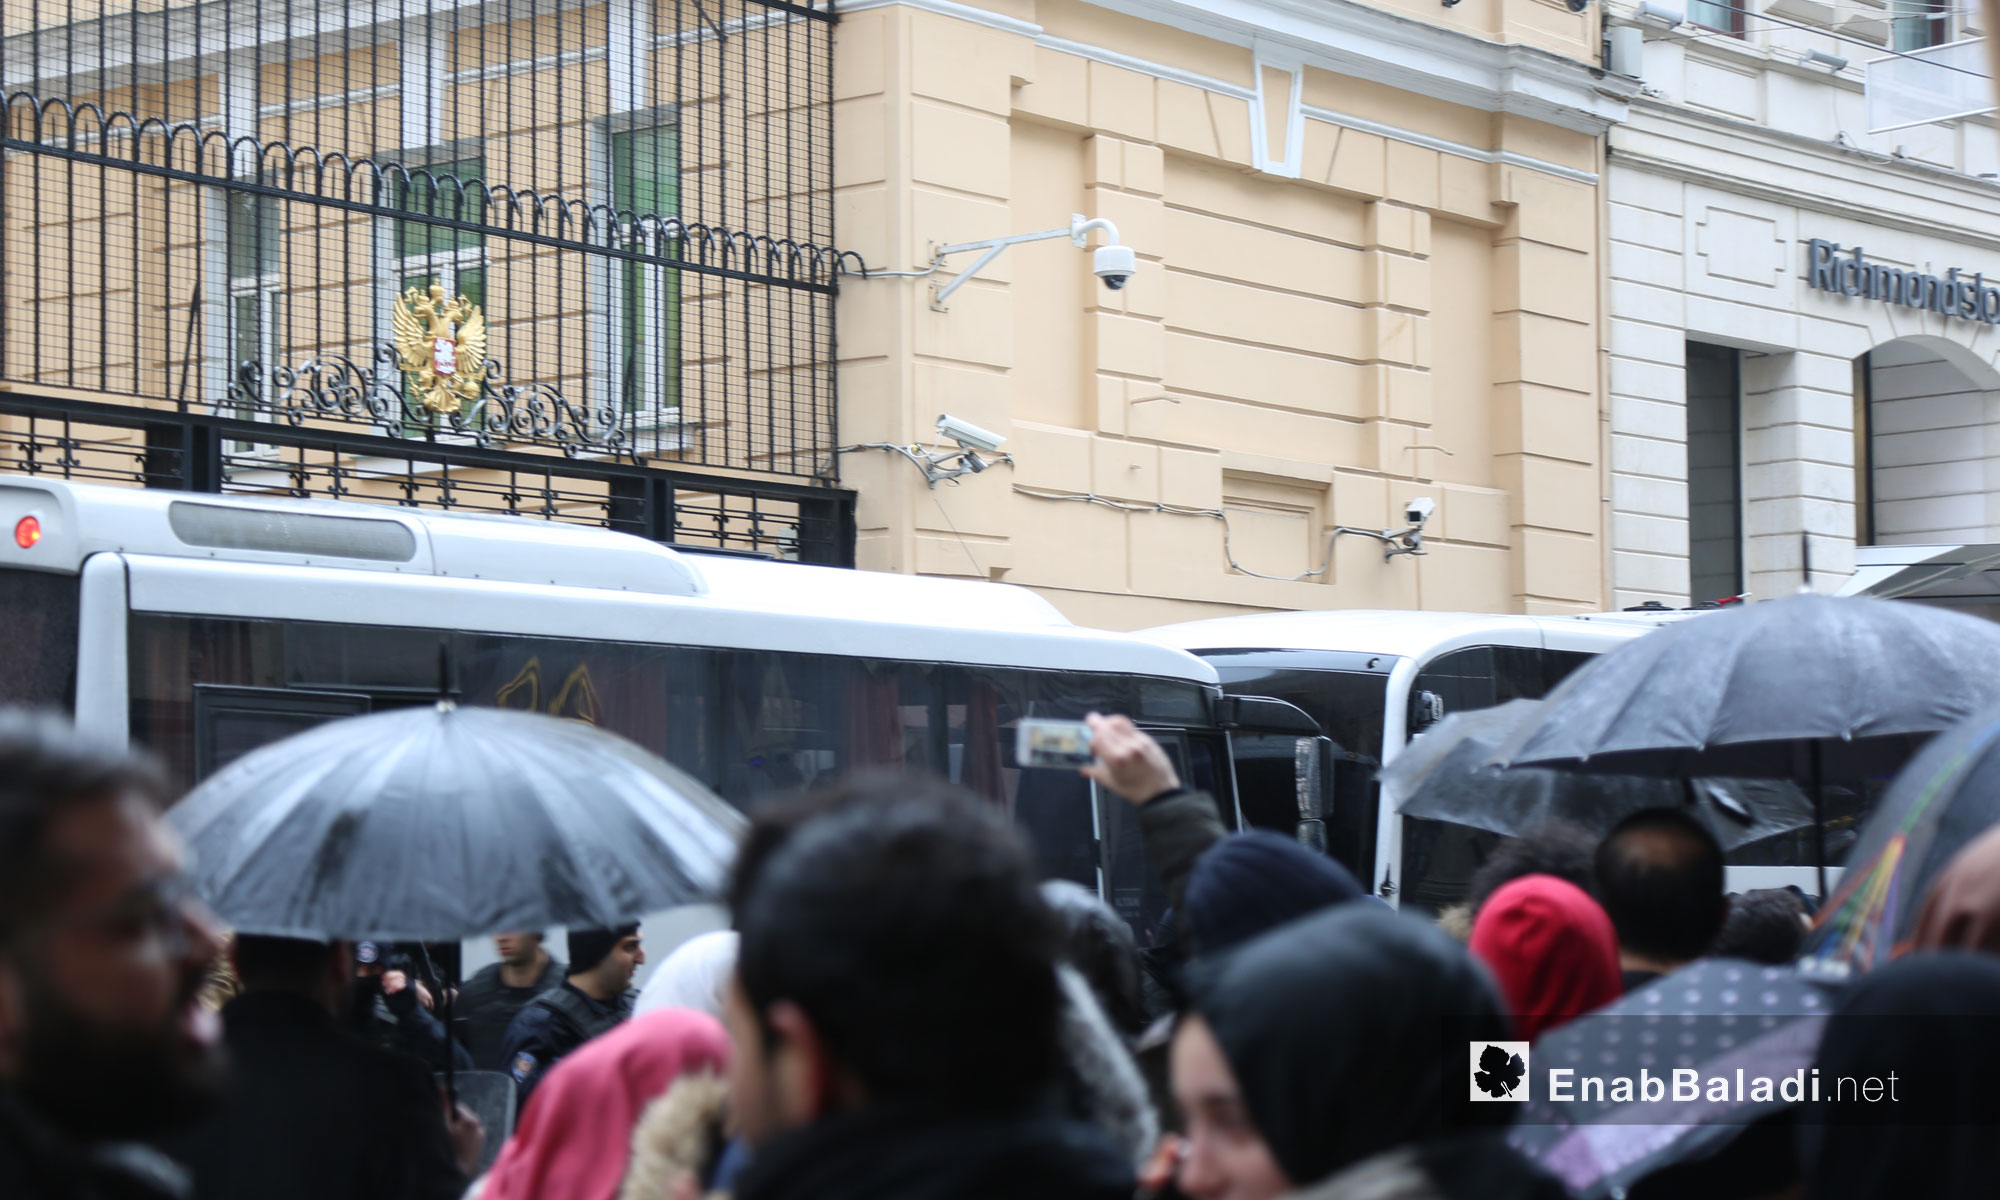 بوابة القنصلية الروسية في اسطنبول أثناء تظاهر السوريين أمامها - 13 كانون الأول 2016 (عنب بلدي)